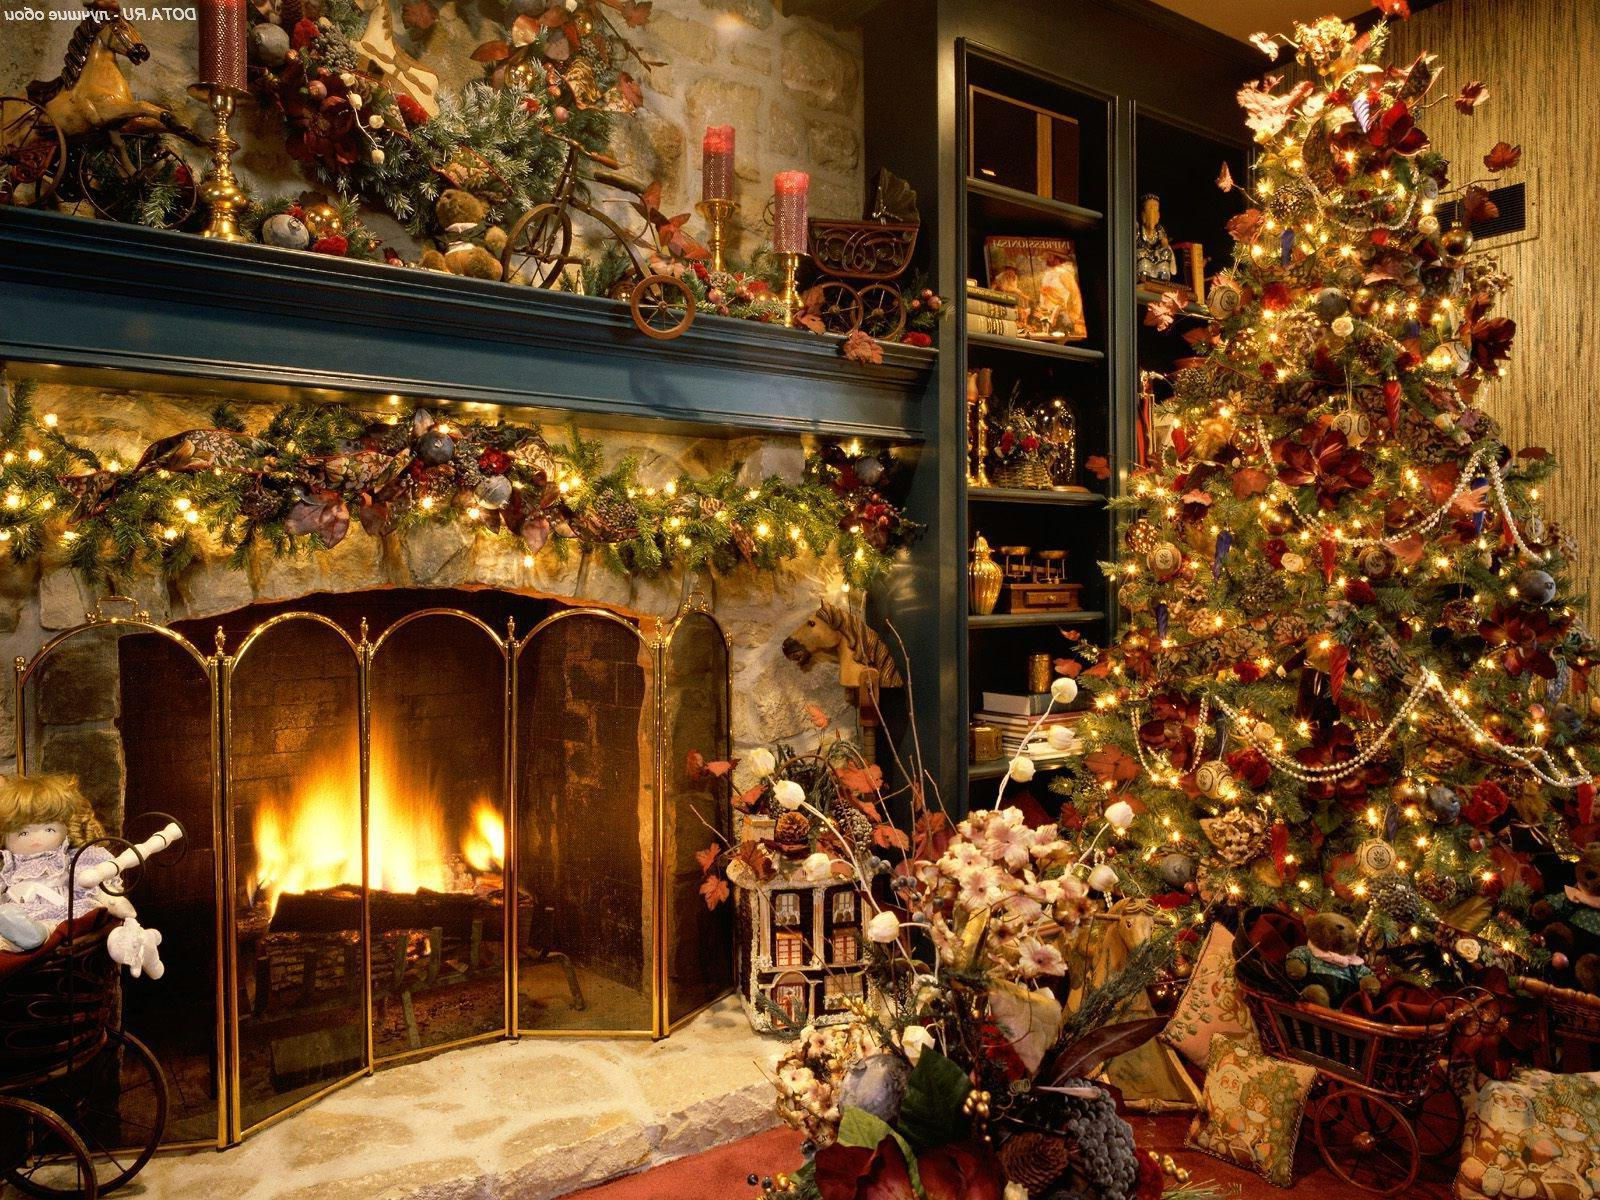 papel pintado noel,árbol de navidad,navidad,hogar,decoración navideña,hogar